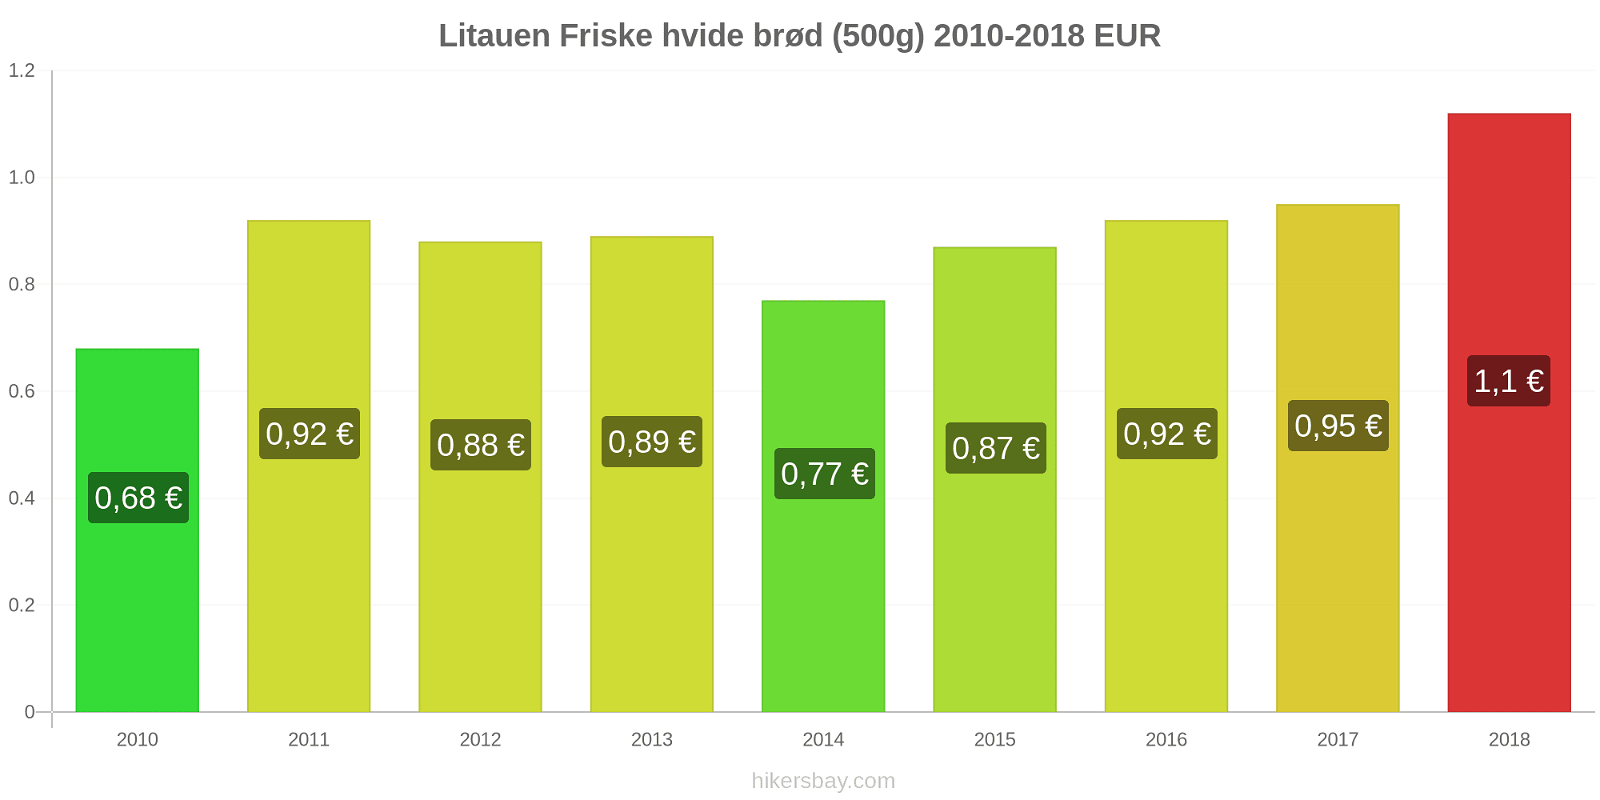 Litauen prisændringer Friske hvide brød (500g) hikersbay.com